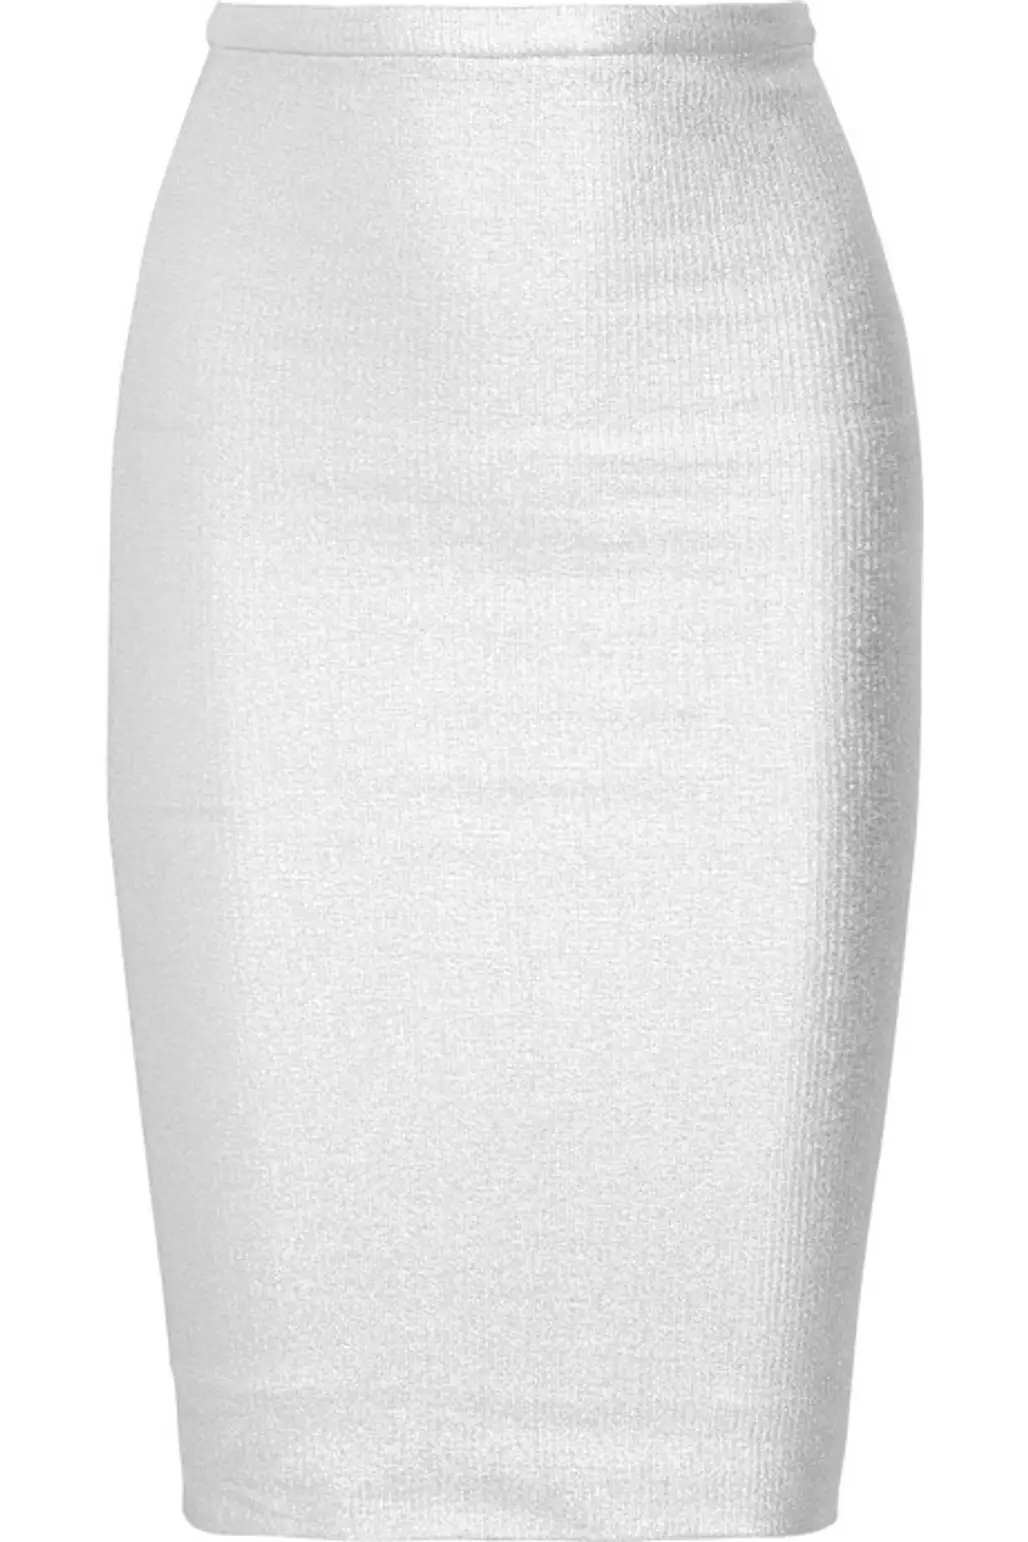 Diane Von Furstenberg Metallic Tube Skirt